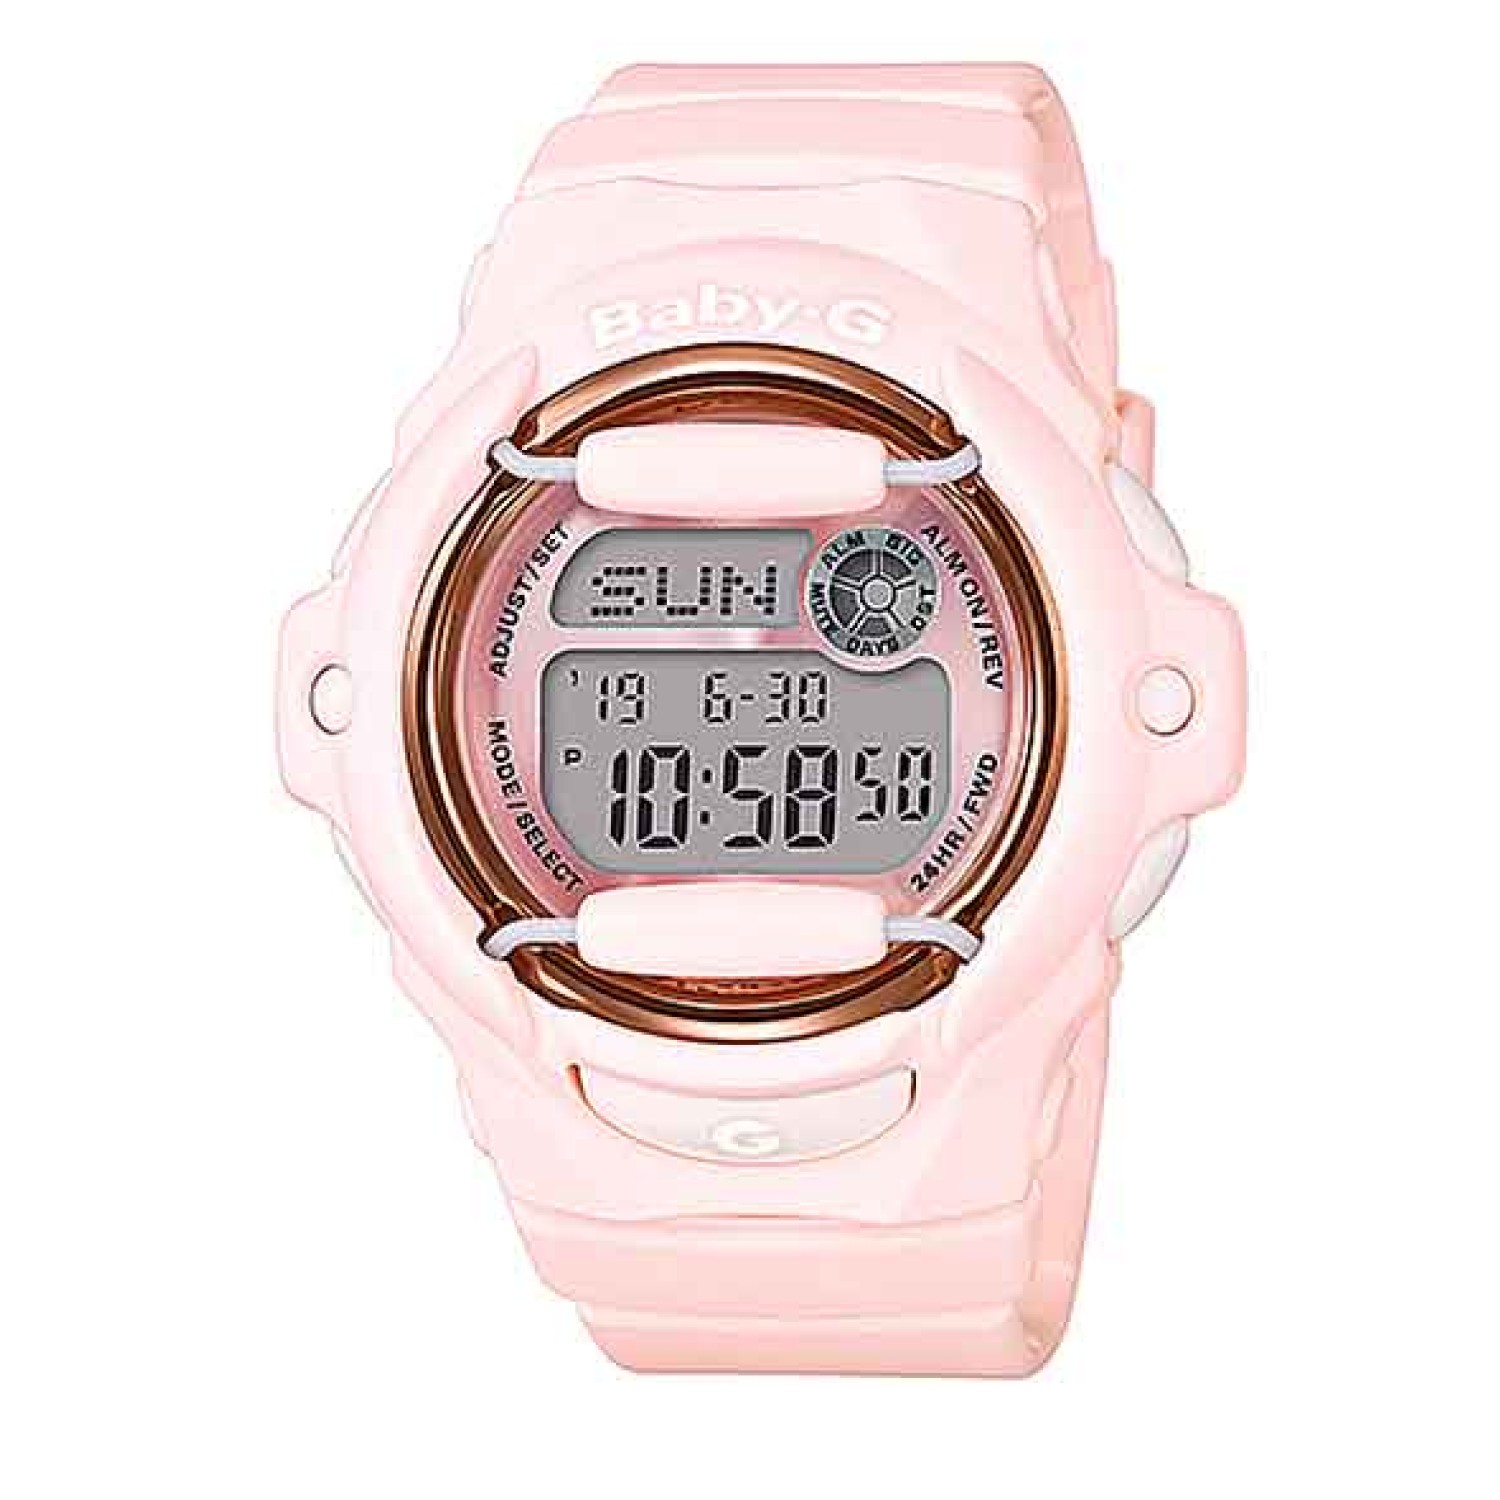 BG169G-4B Casio BabY-G Pink Series Watch.casio watches nz sale $229.00